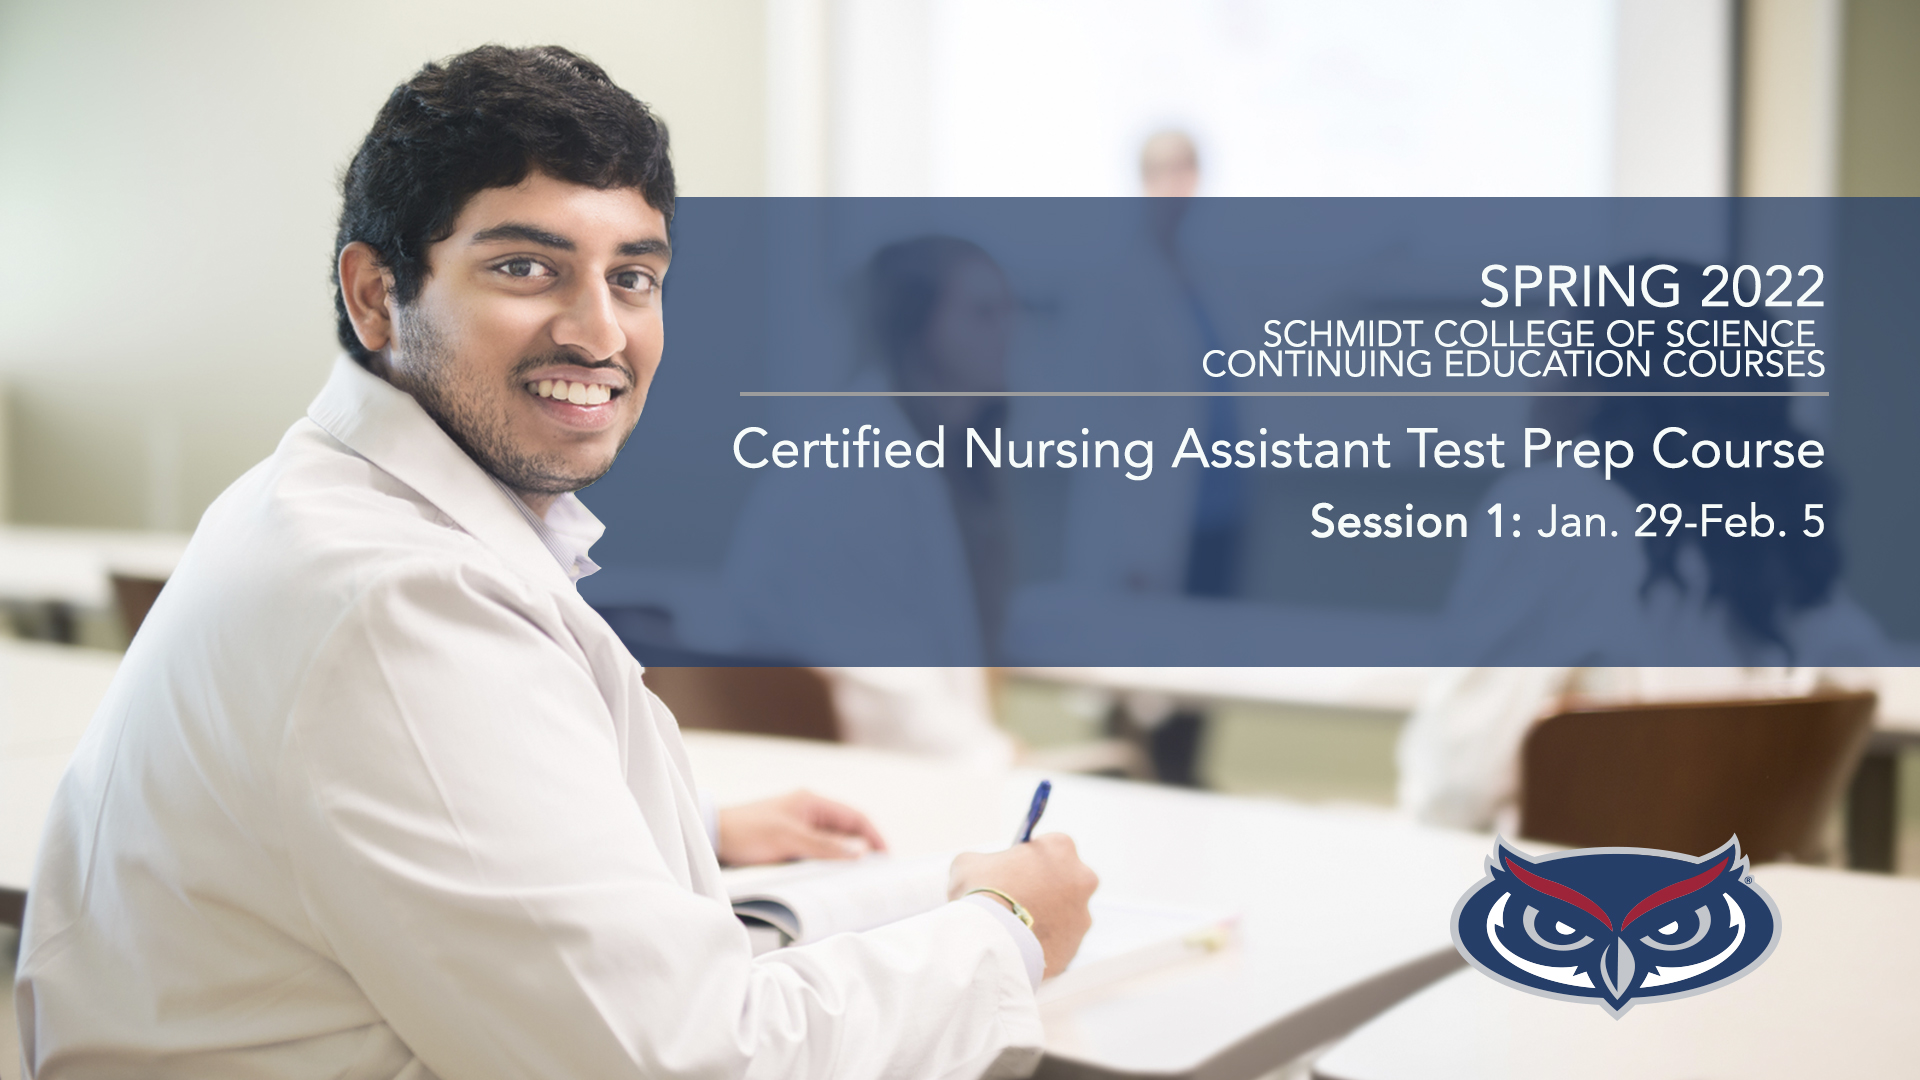 Spring 2022 Certified Nursing Assistant Test Prep